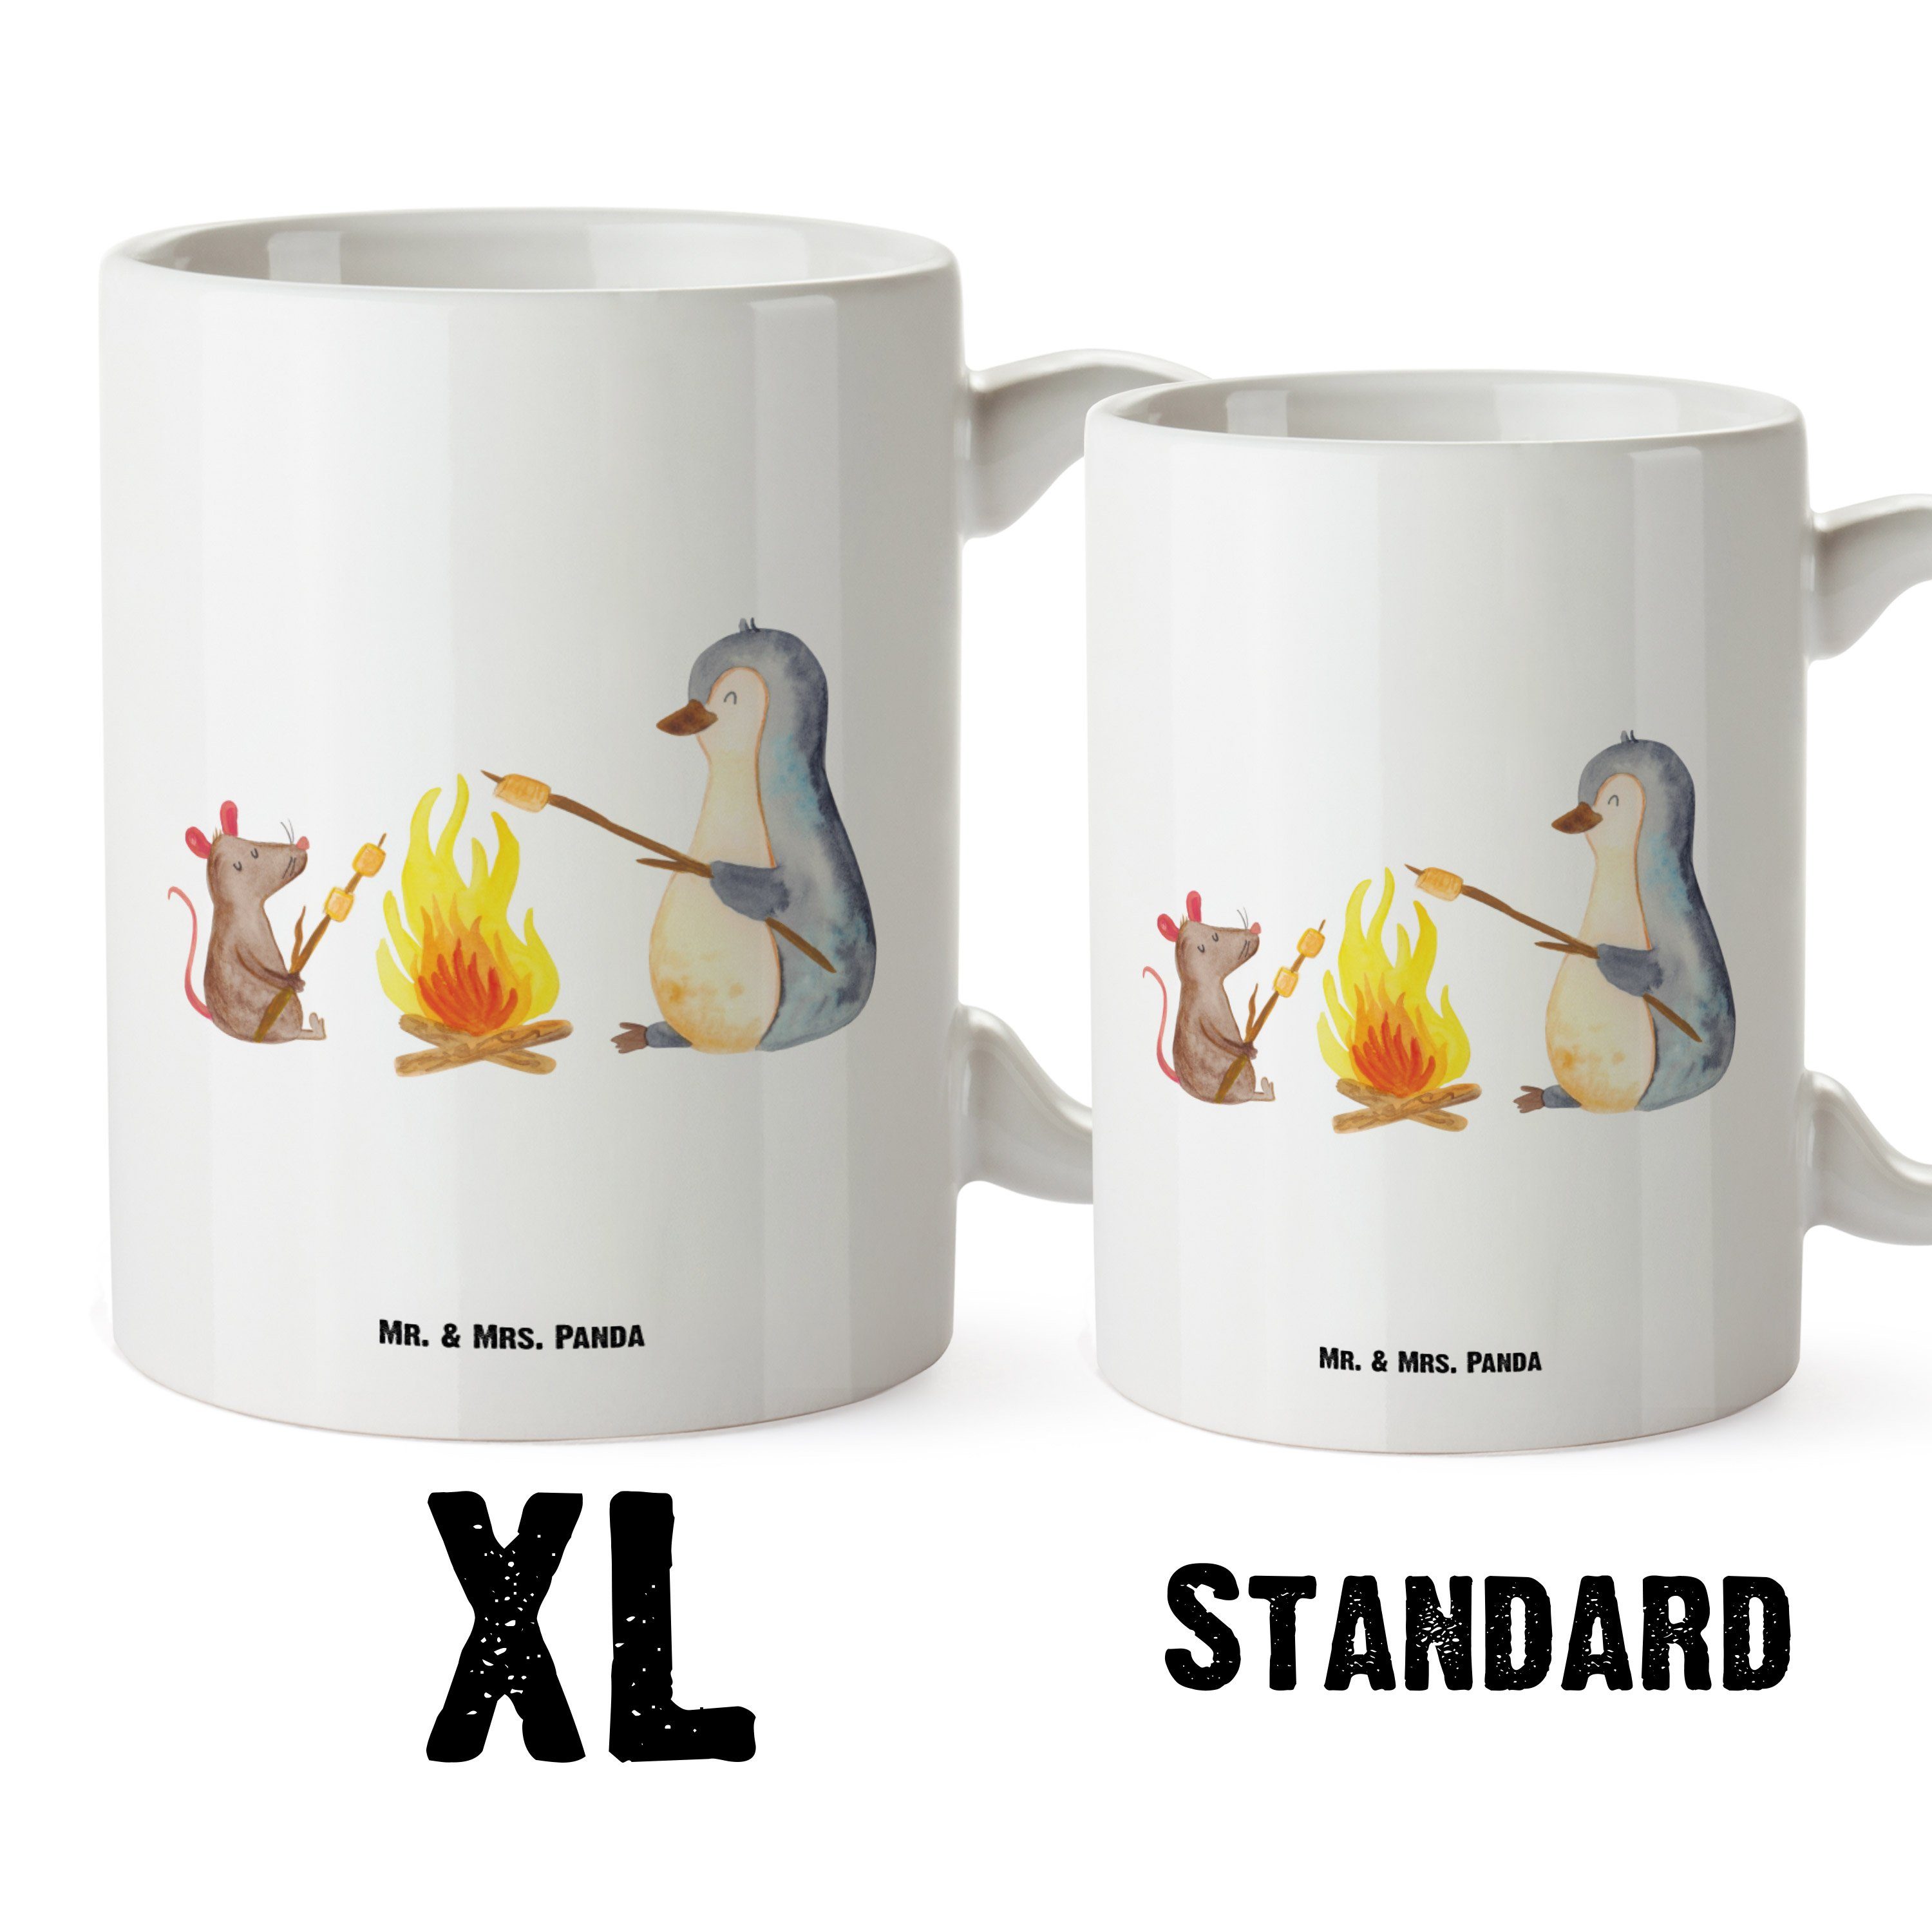 Mr. & Mrs. Panda Tasse - Keramik Tasse, XL Tasse Große - Marshmallows, Pinguin Weiß Lagerfeuer Maus, Geschenk